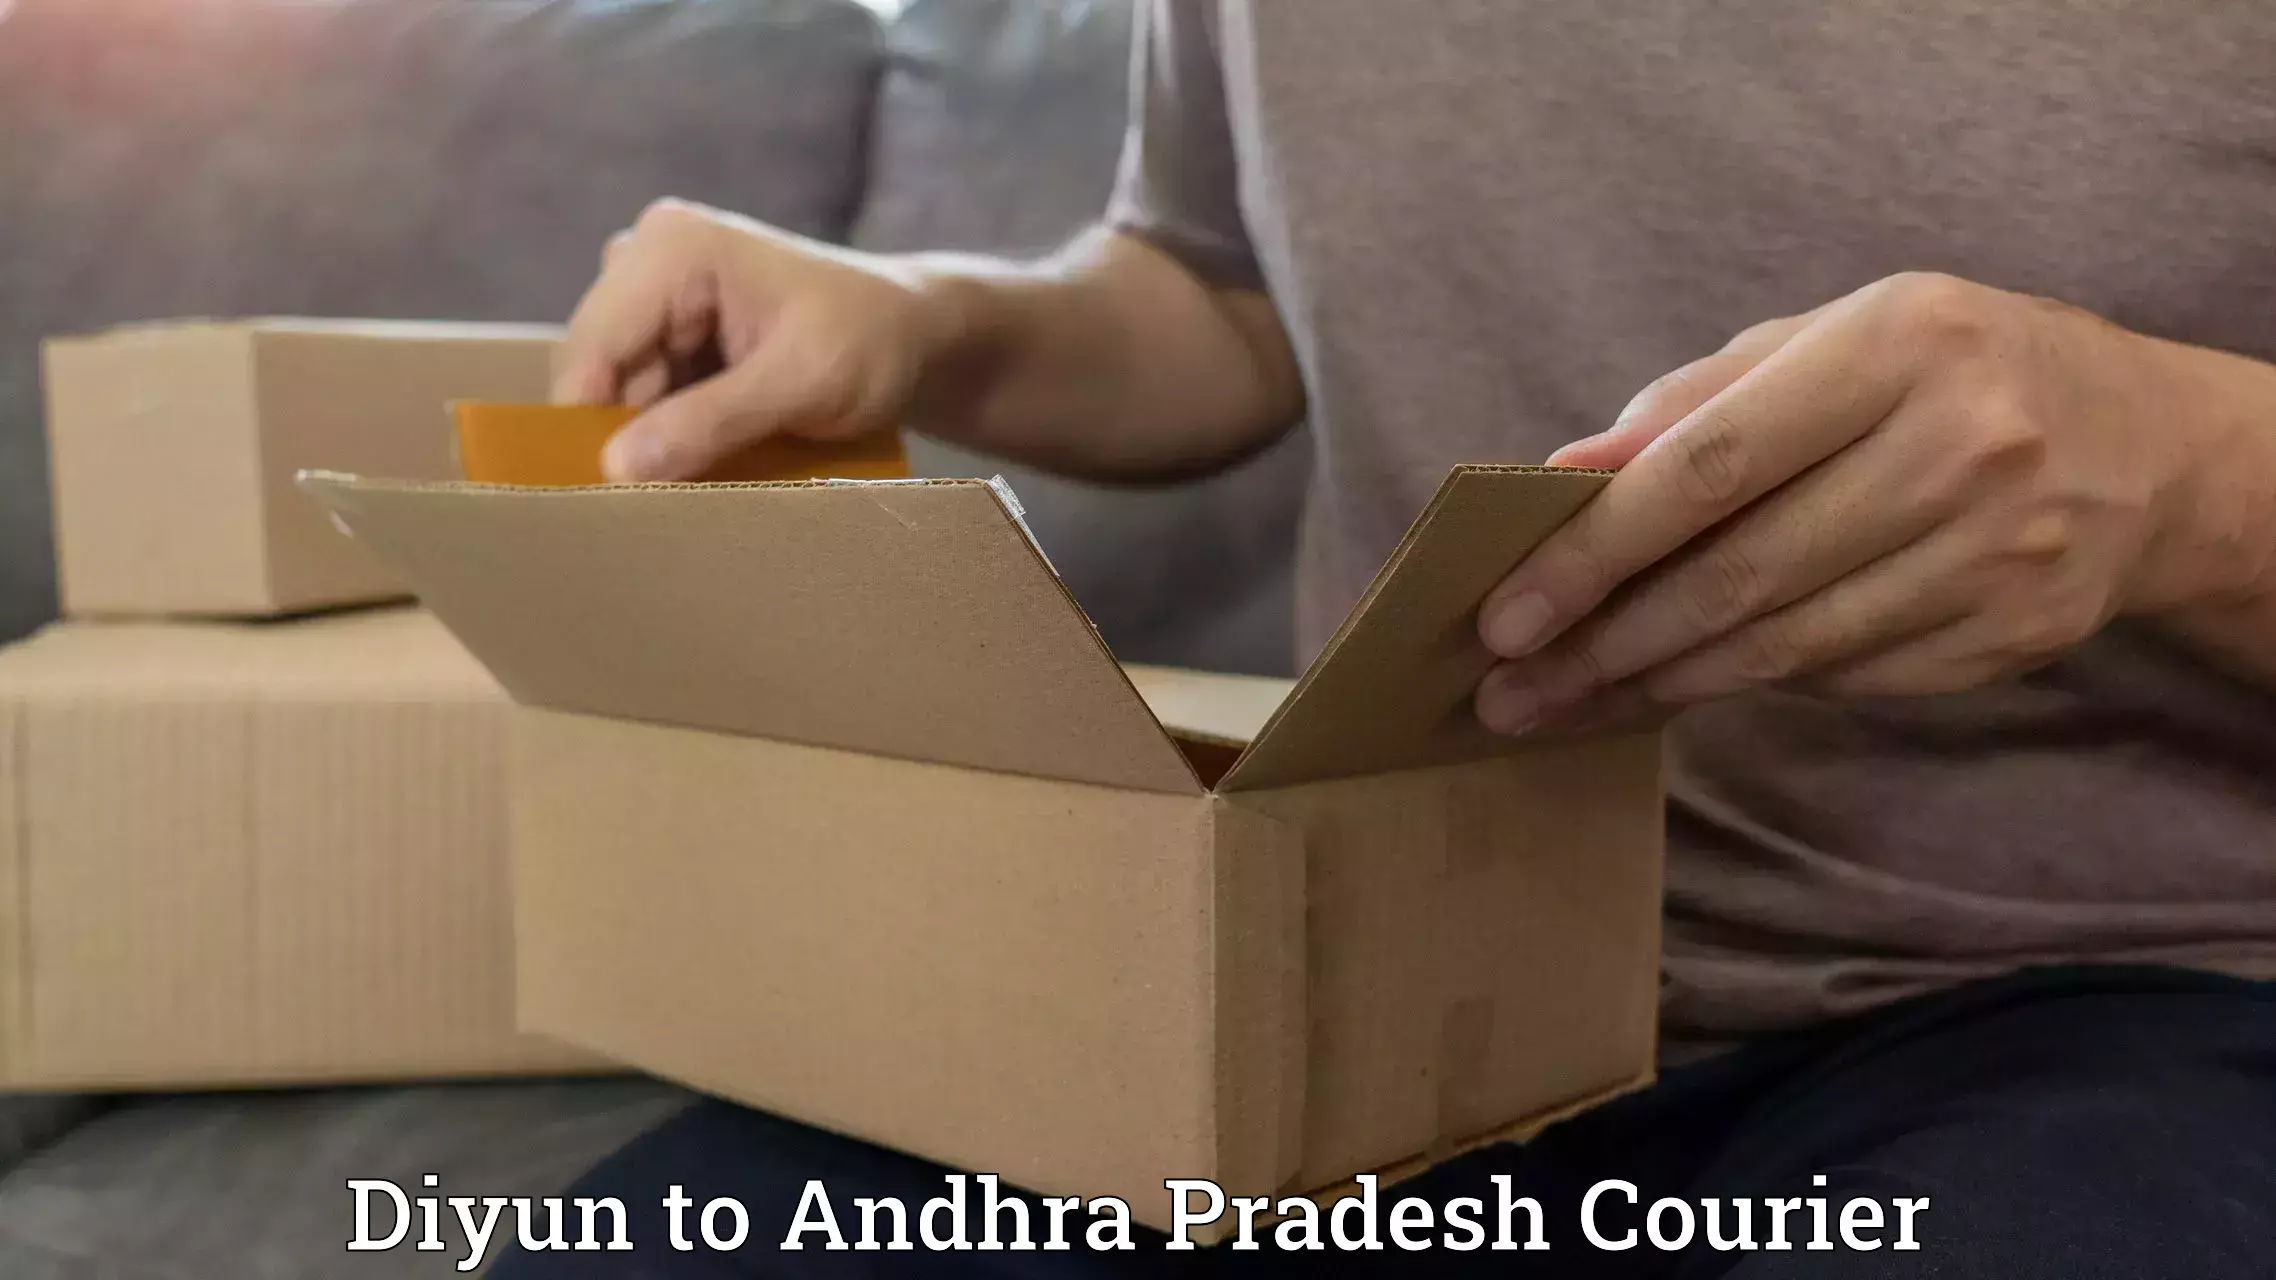 Courier service efficiency Diyun to Andhra Pradesh